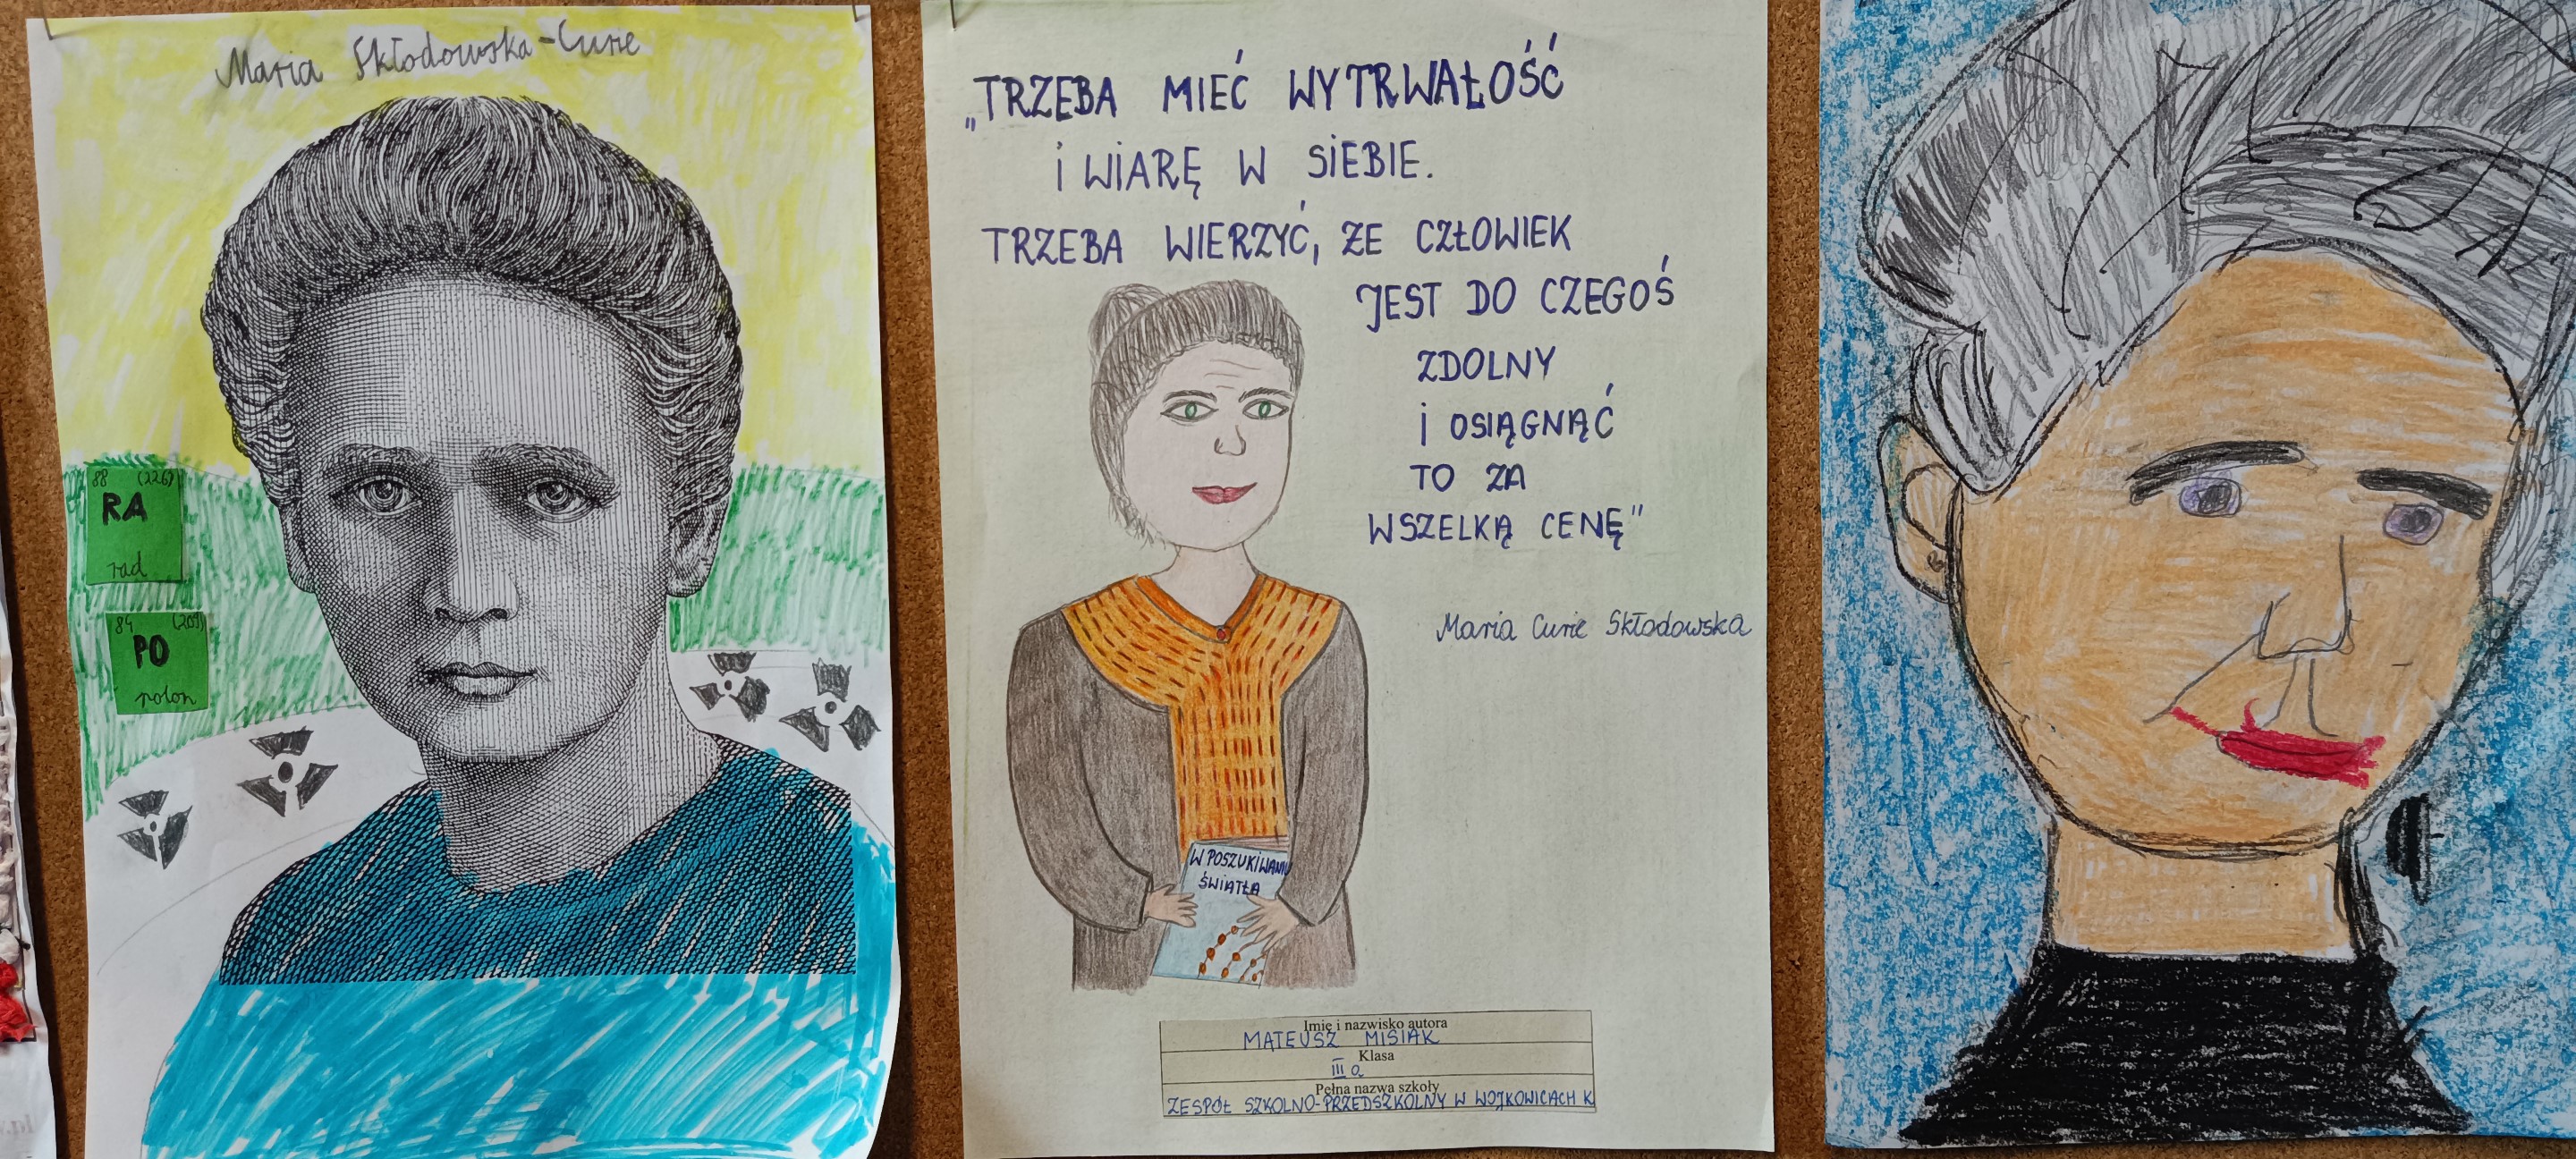 Maria Skłodowska-Curie - kreatywny portret uczonej